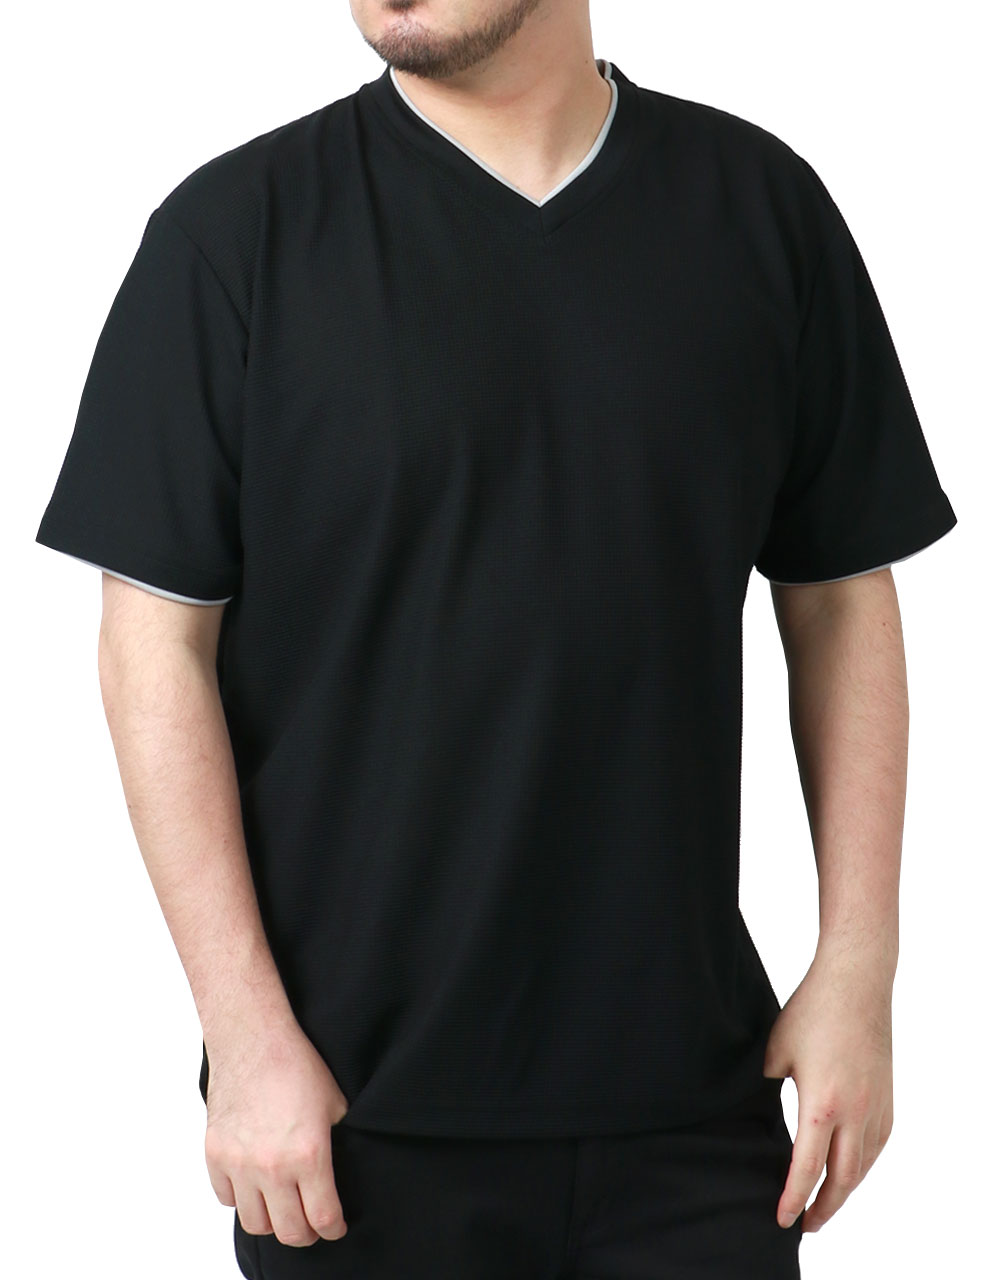 大きいサイズメンズ Tシャツ DISCUS ディスカス 半袖 Vネック